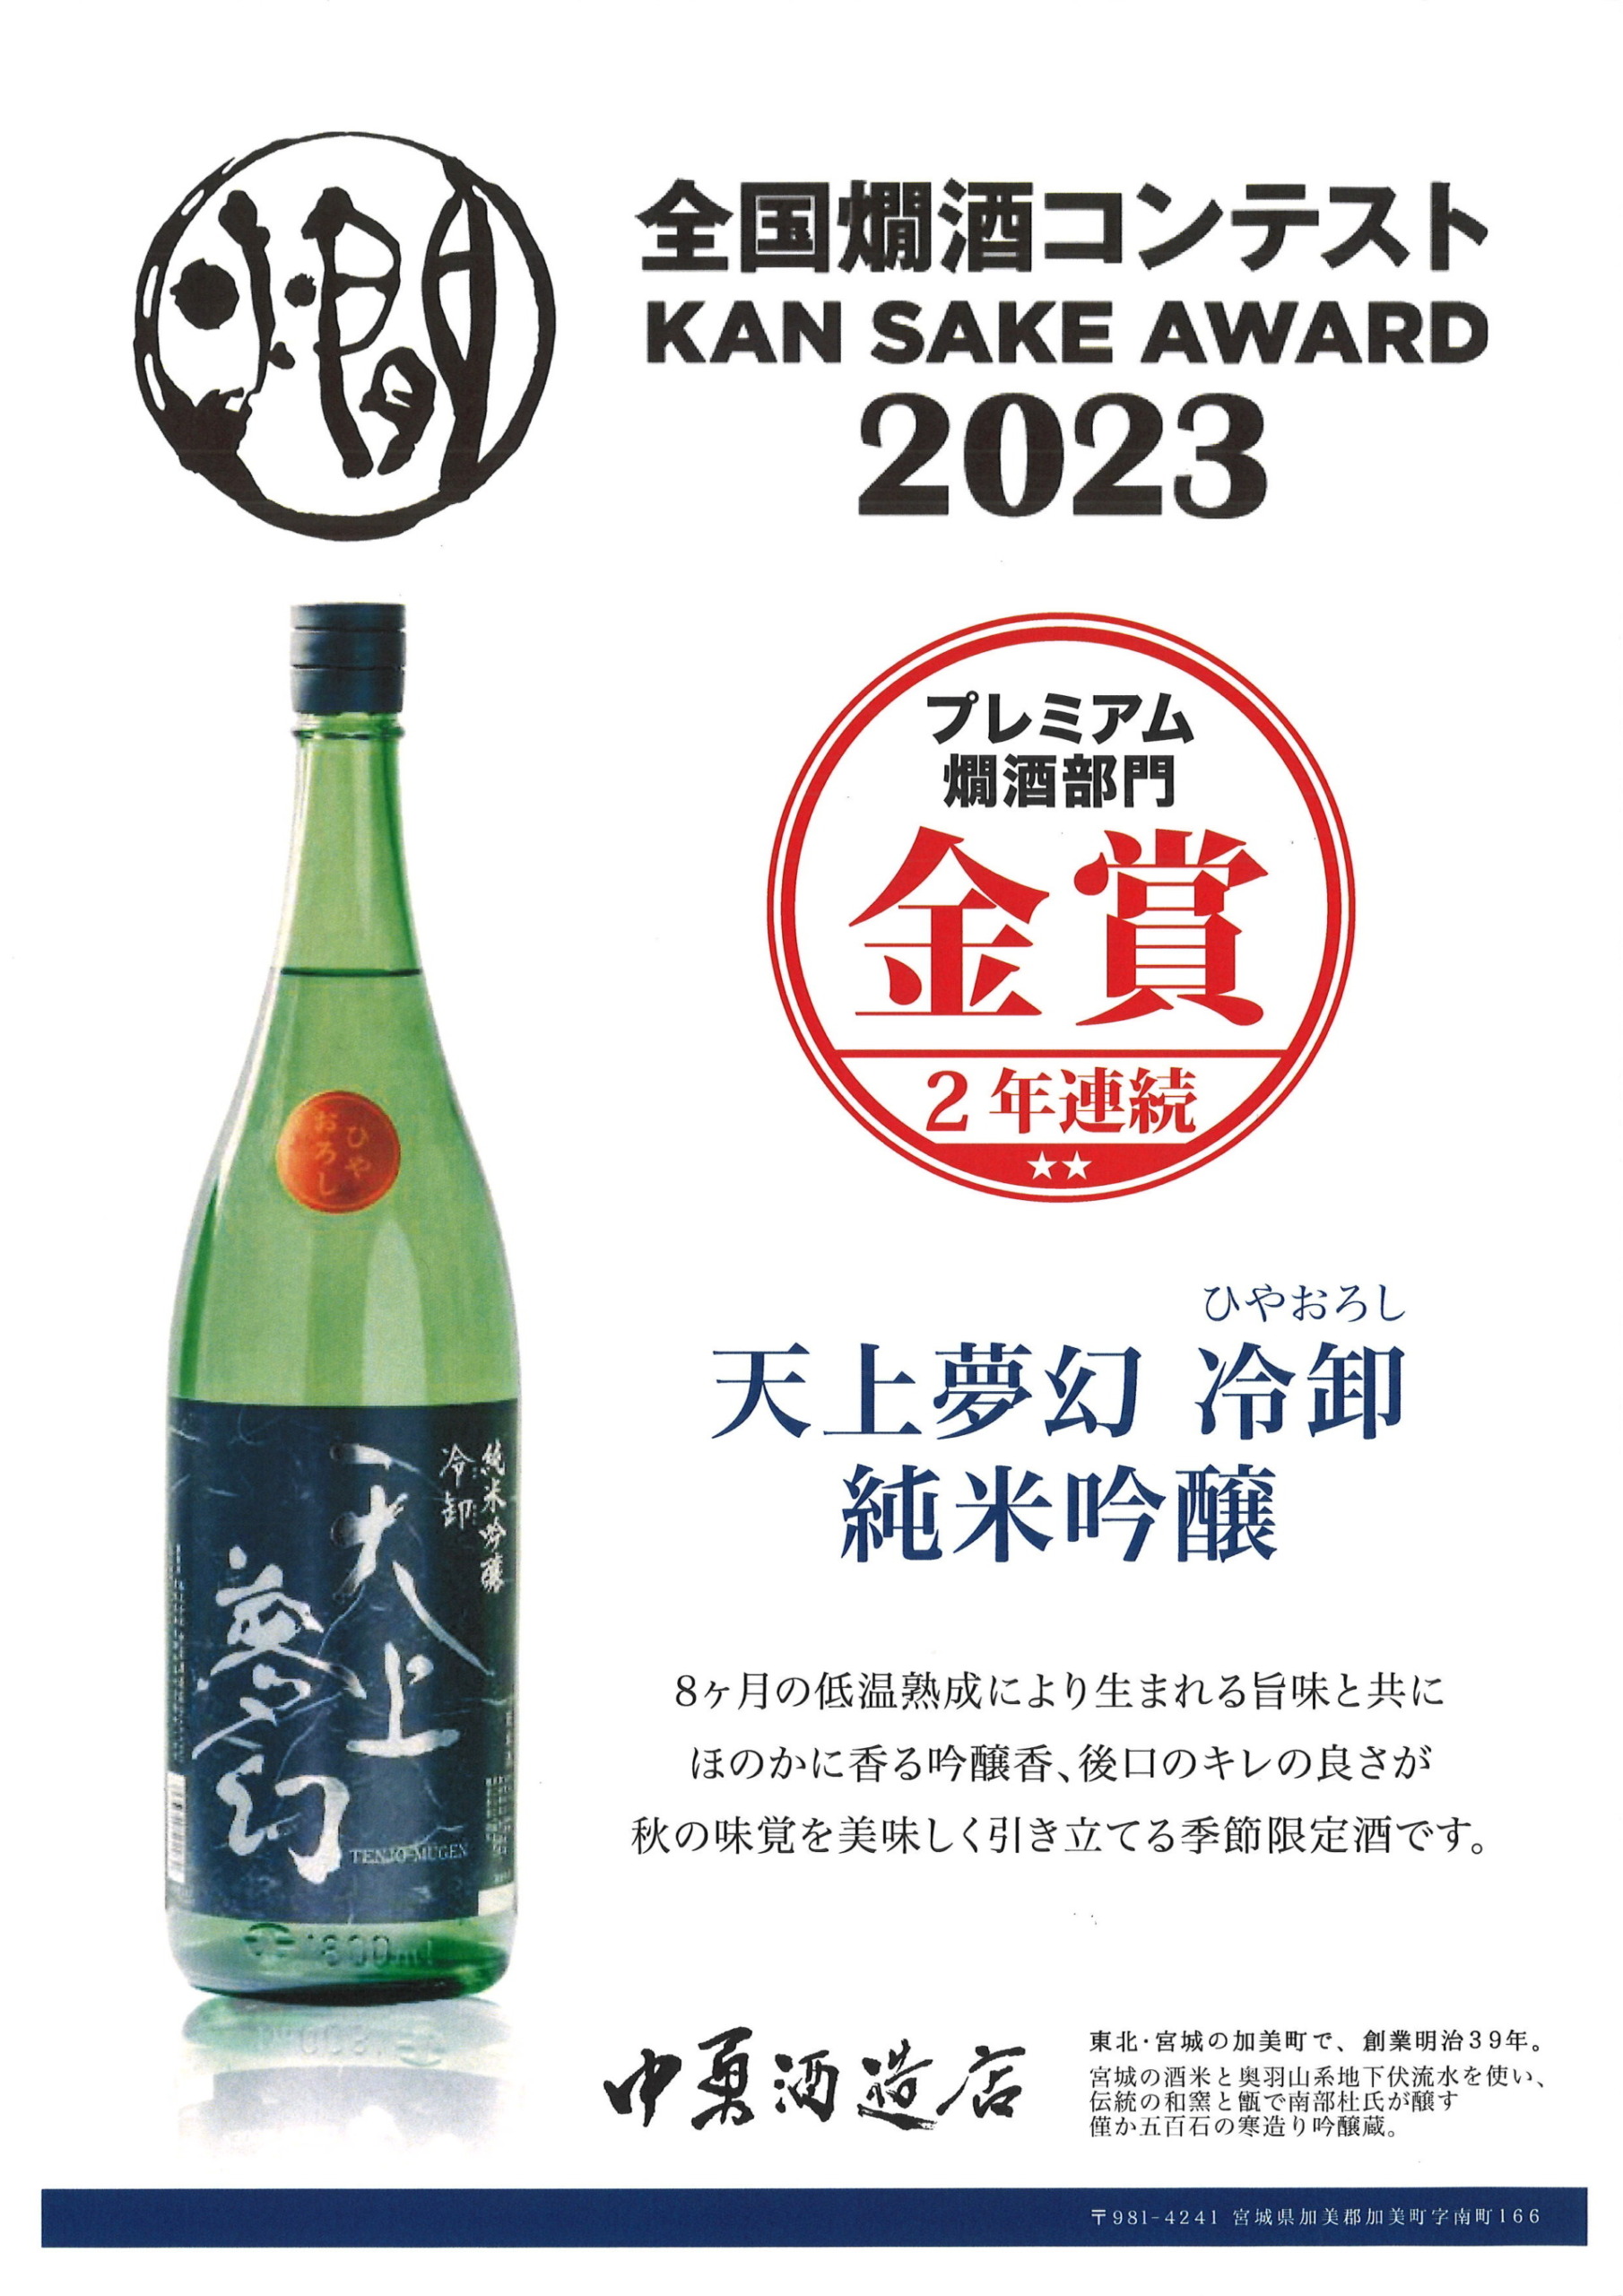 《全国燗酒コンテスト2023 2部門金賞受賞》